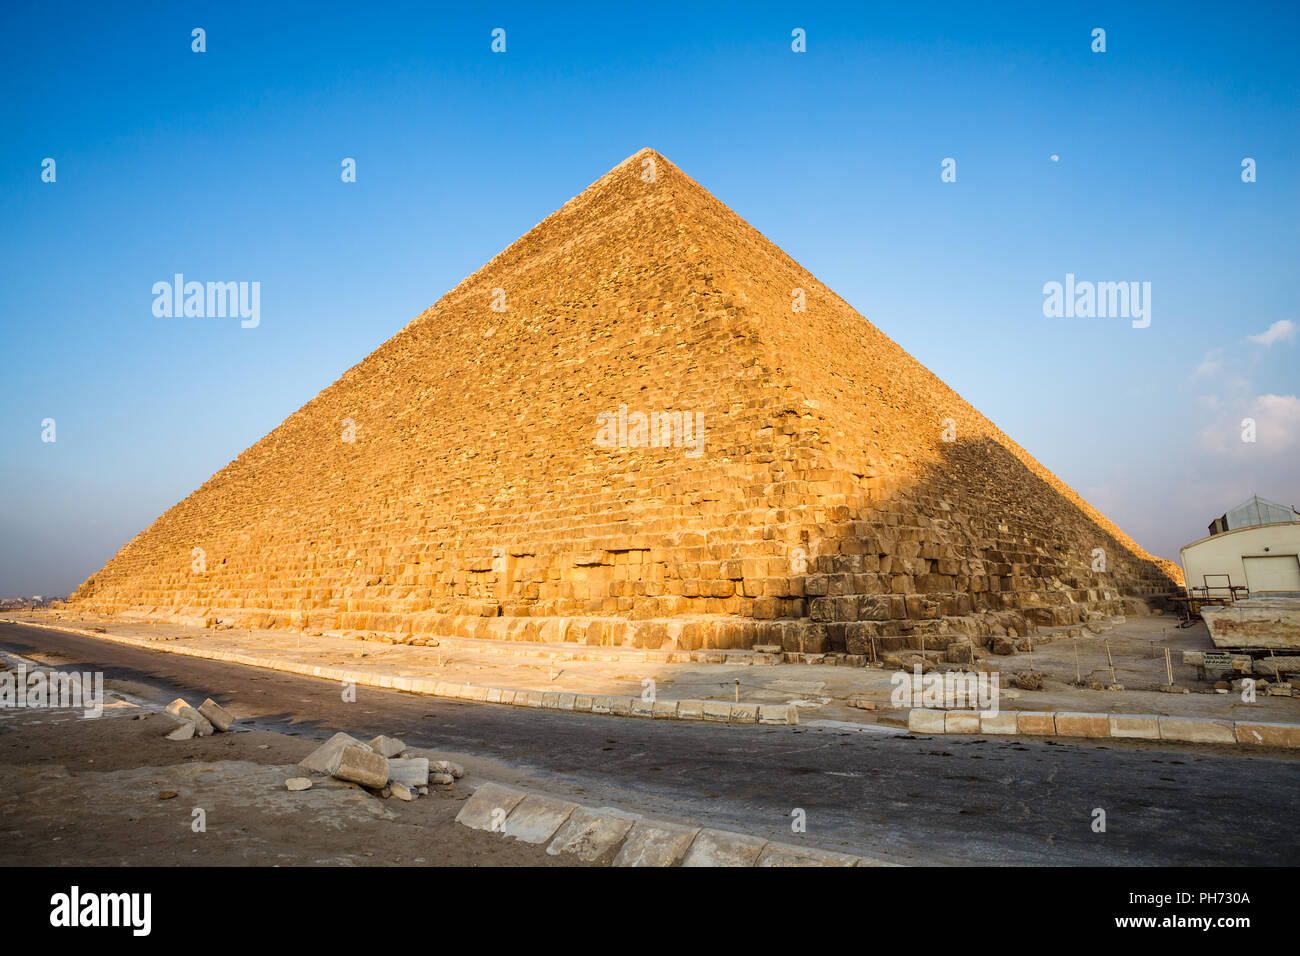 Pyramid of khufu Stock Photo